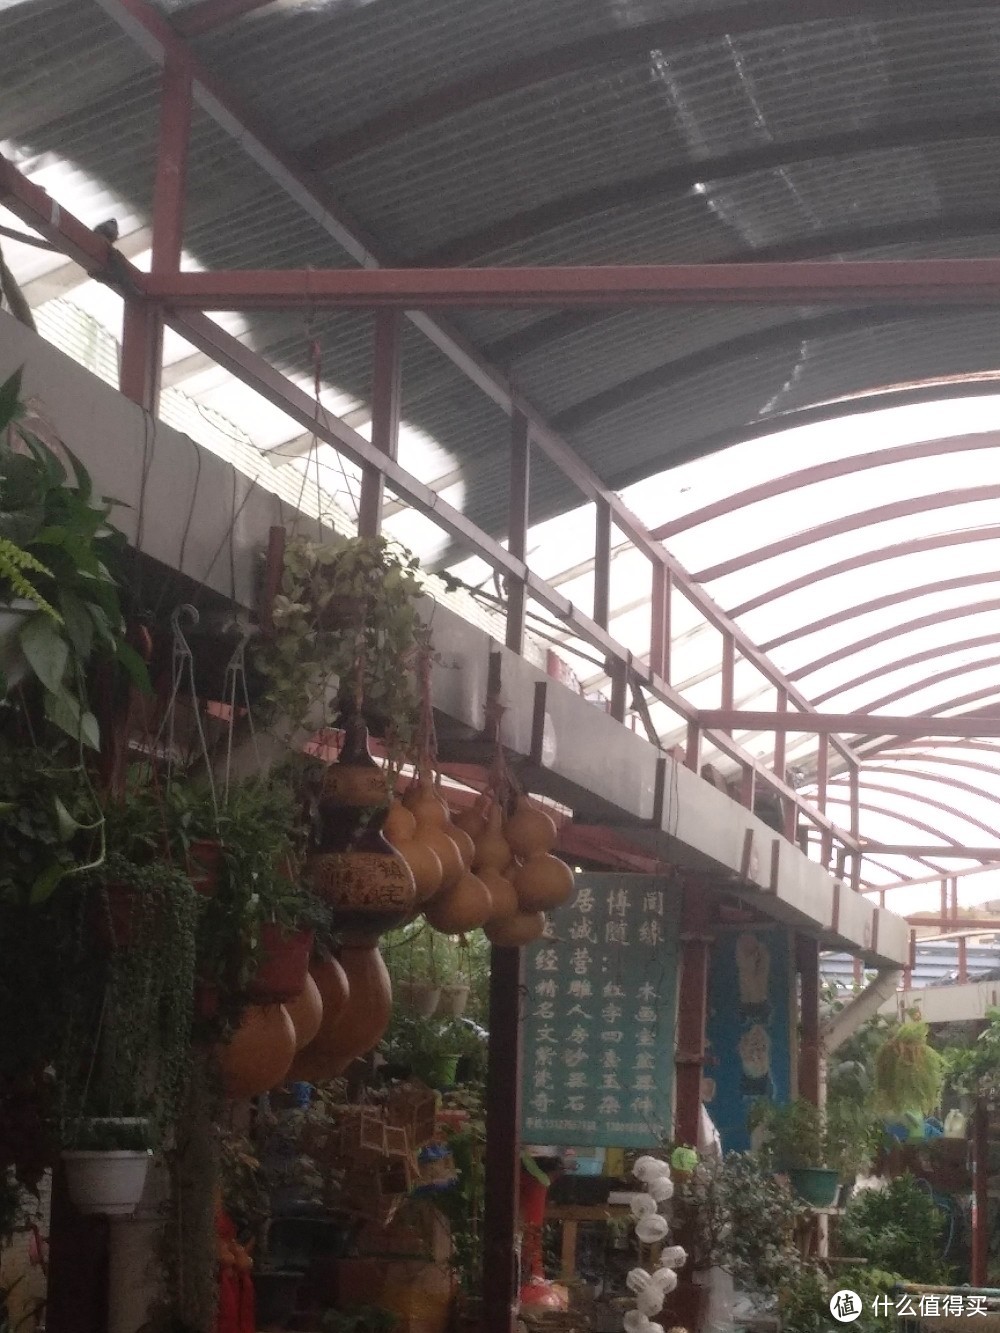 梅陇花鸟市场（就像逛植物园花市和水族馆一样）隐藏在1号线莲花路地铁站边